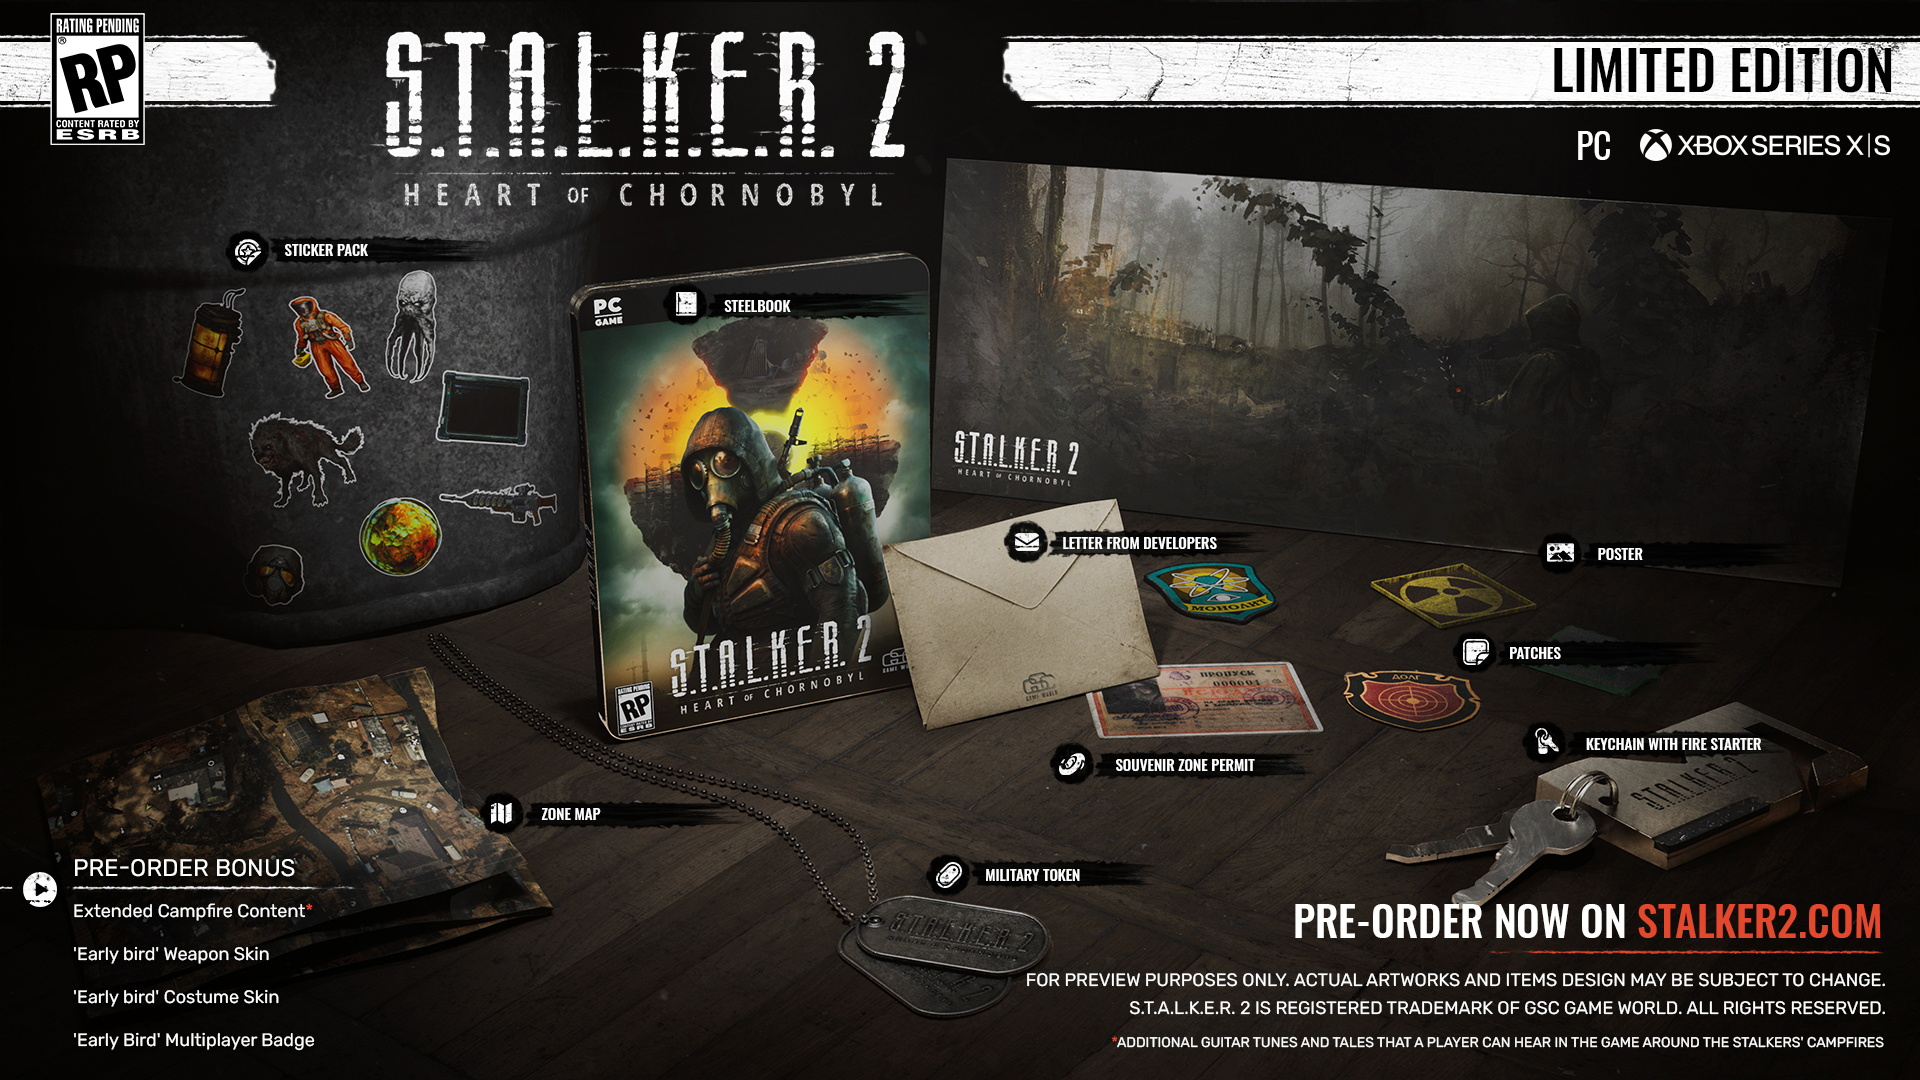 STALKER 2 Limited Edition